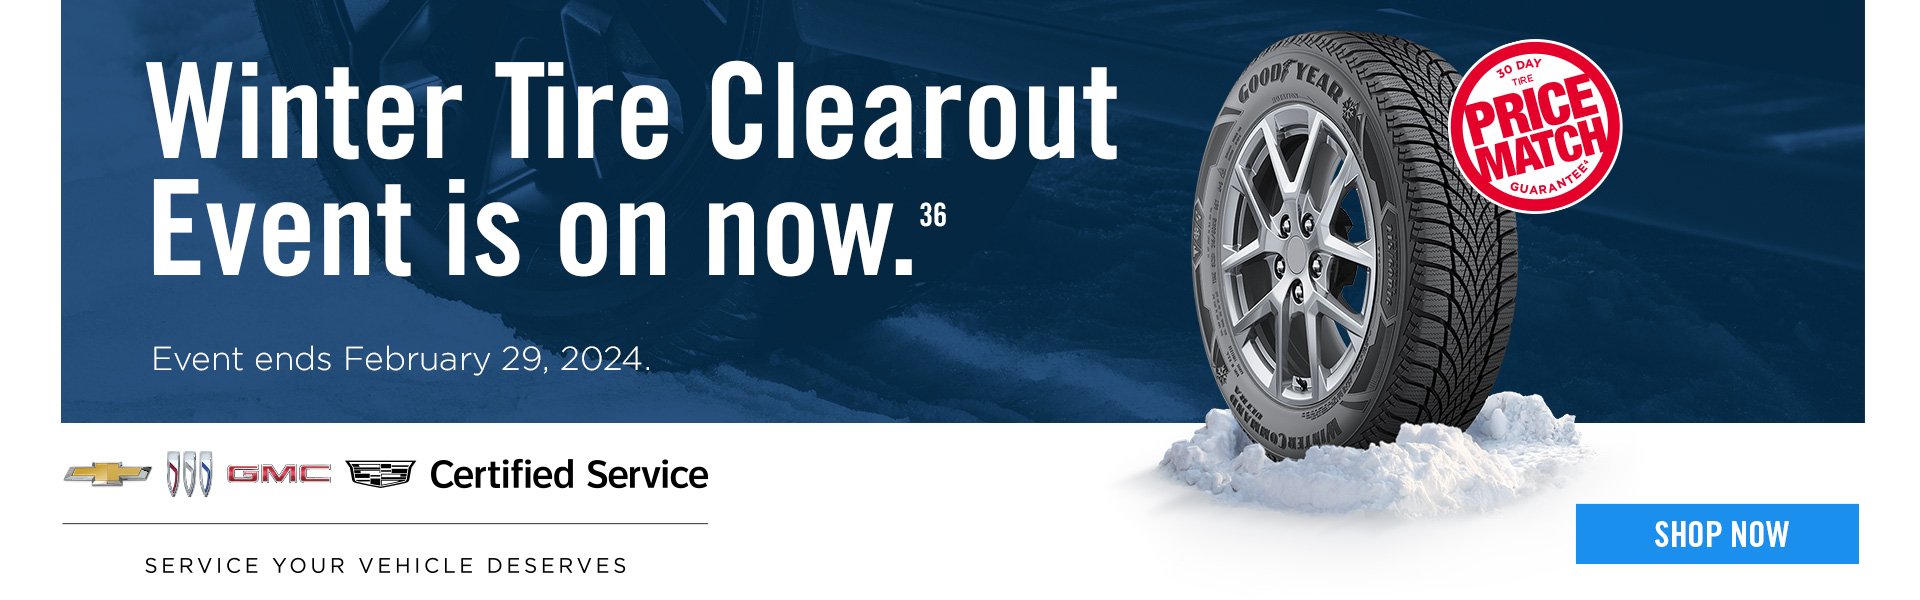 CBG Winter Tire clearout